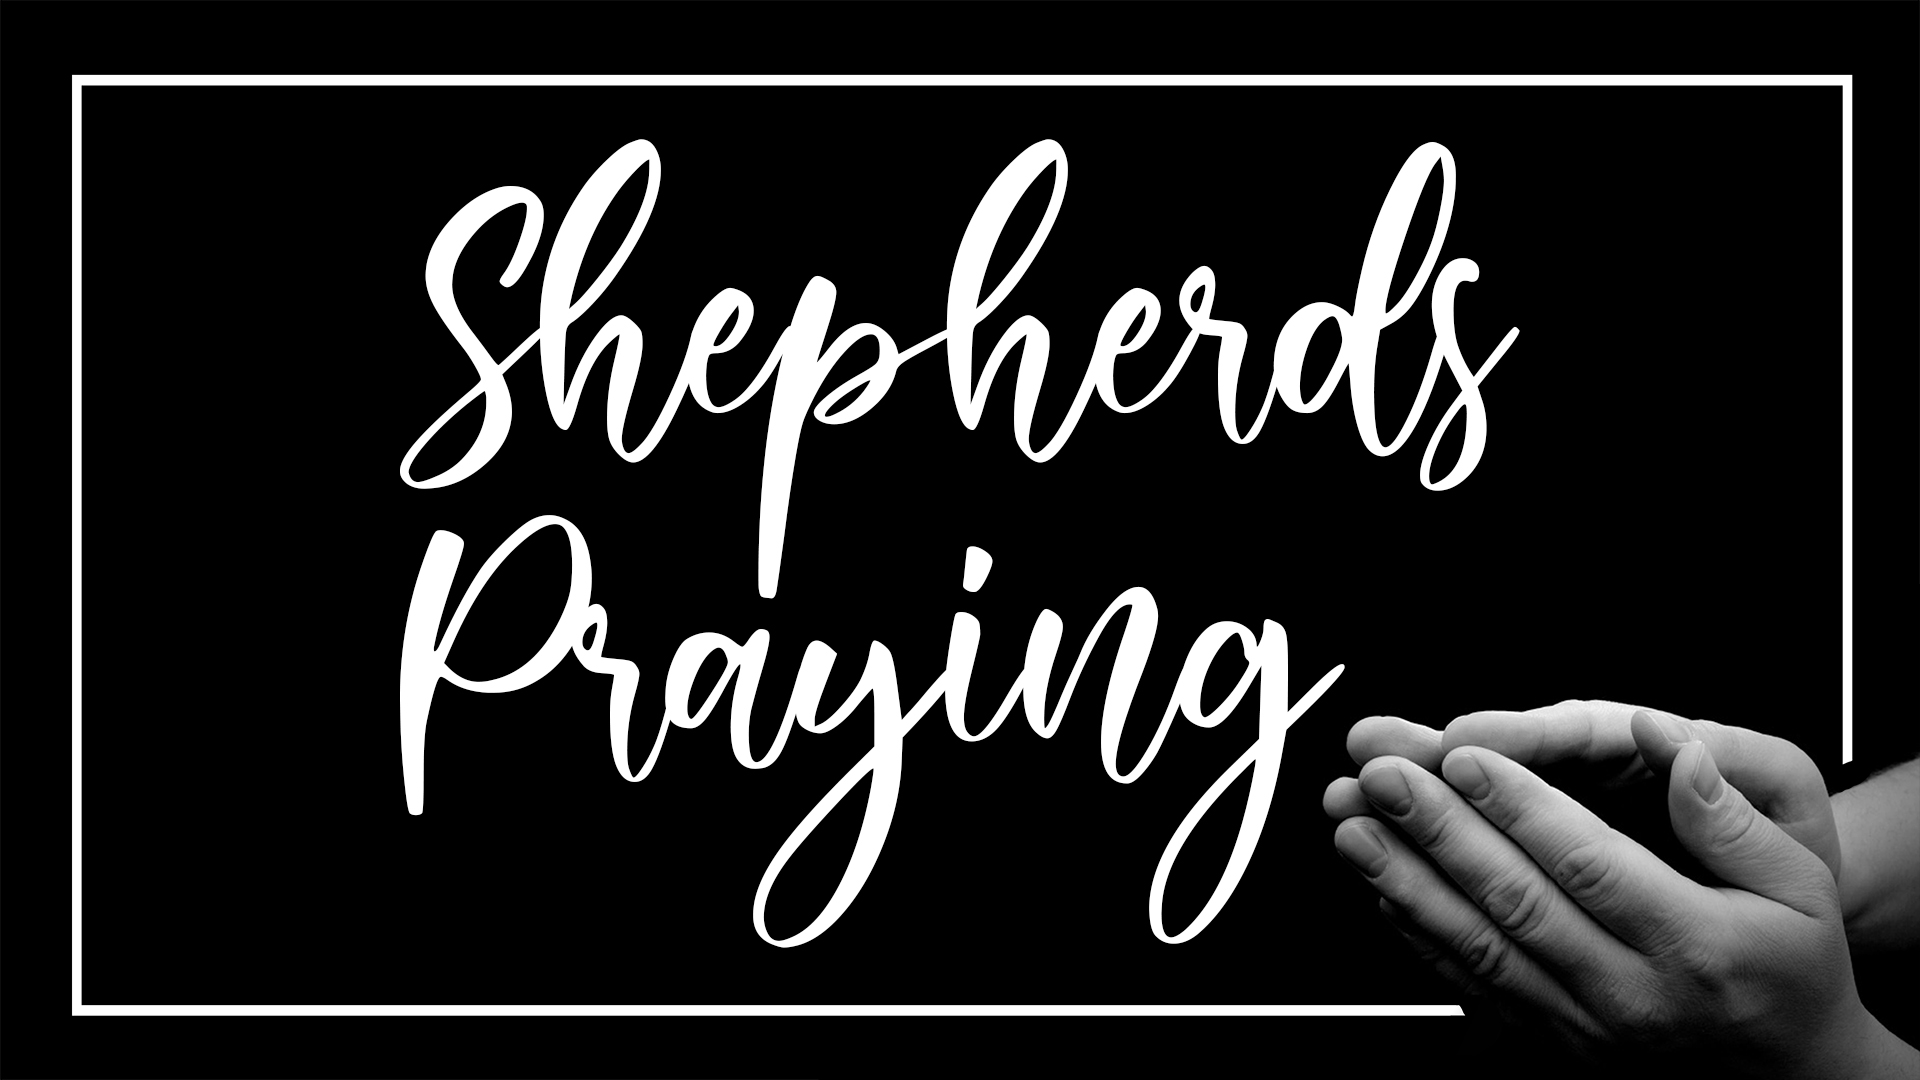 Shepherds Praying